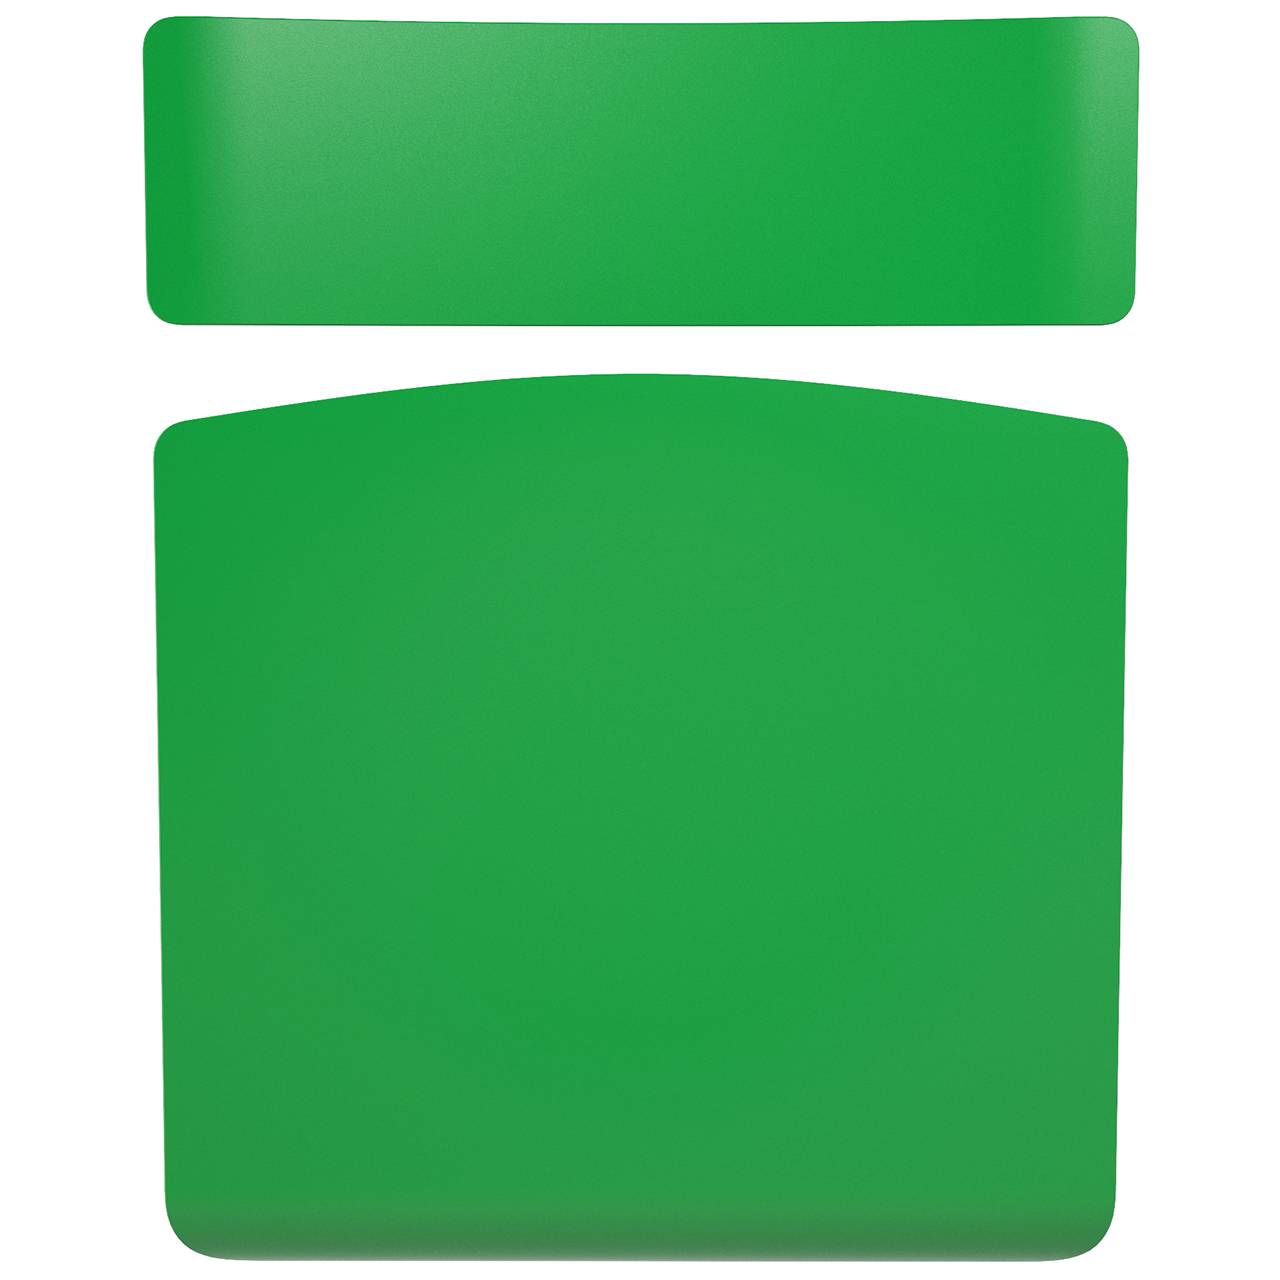 Стул ученический нерегулируемый   гр. 3, 4, 5 или 6 серый Зеленый 4 плоскоовальная